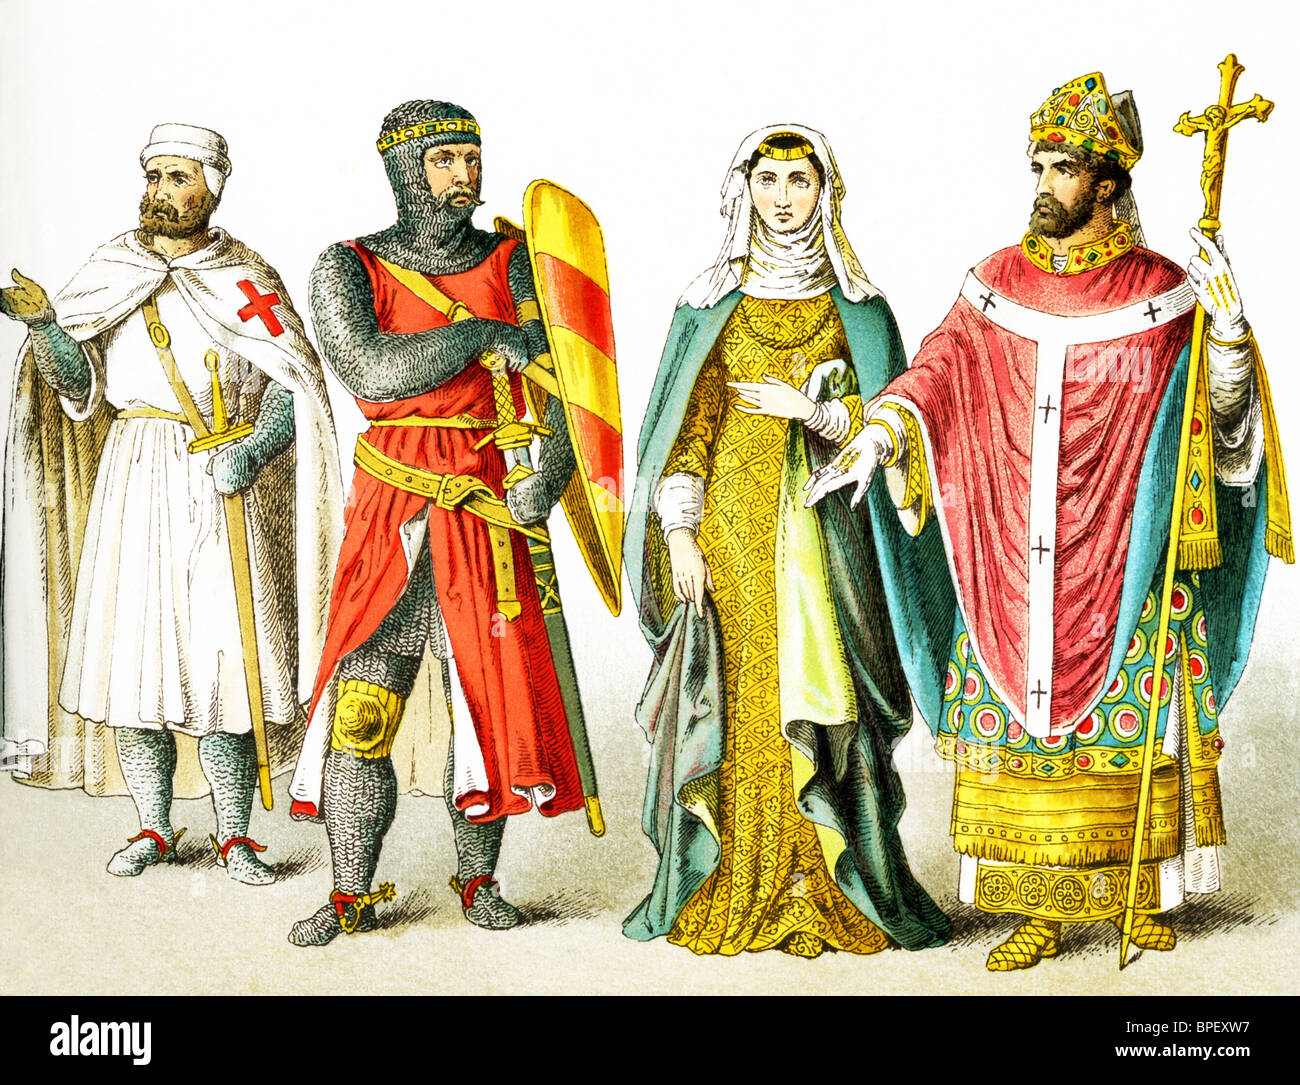 Le figure sono gente inglese intorno A.D. 1200. Essi sono, da sinistra a destra: Cavaliere Templare, cavaliere, signora di rango, vescovo. Foto Stock